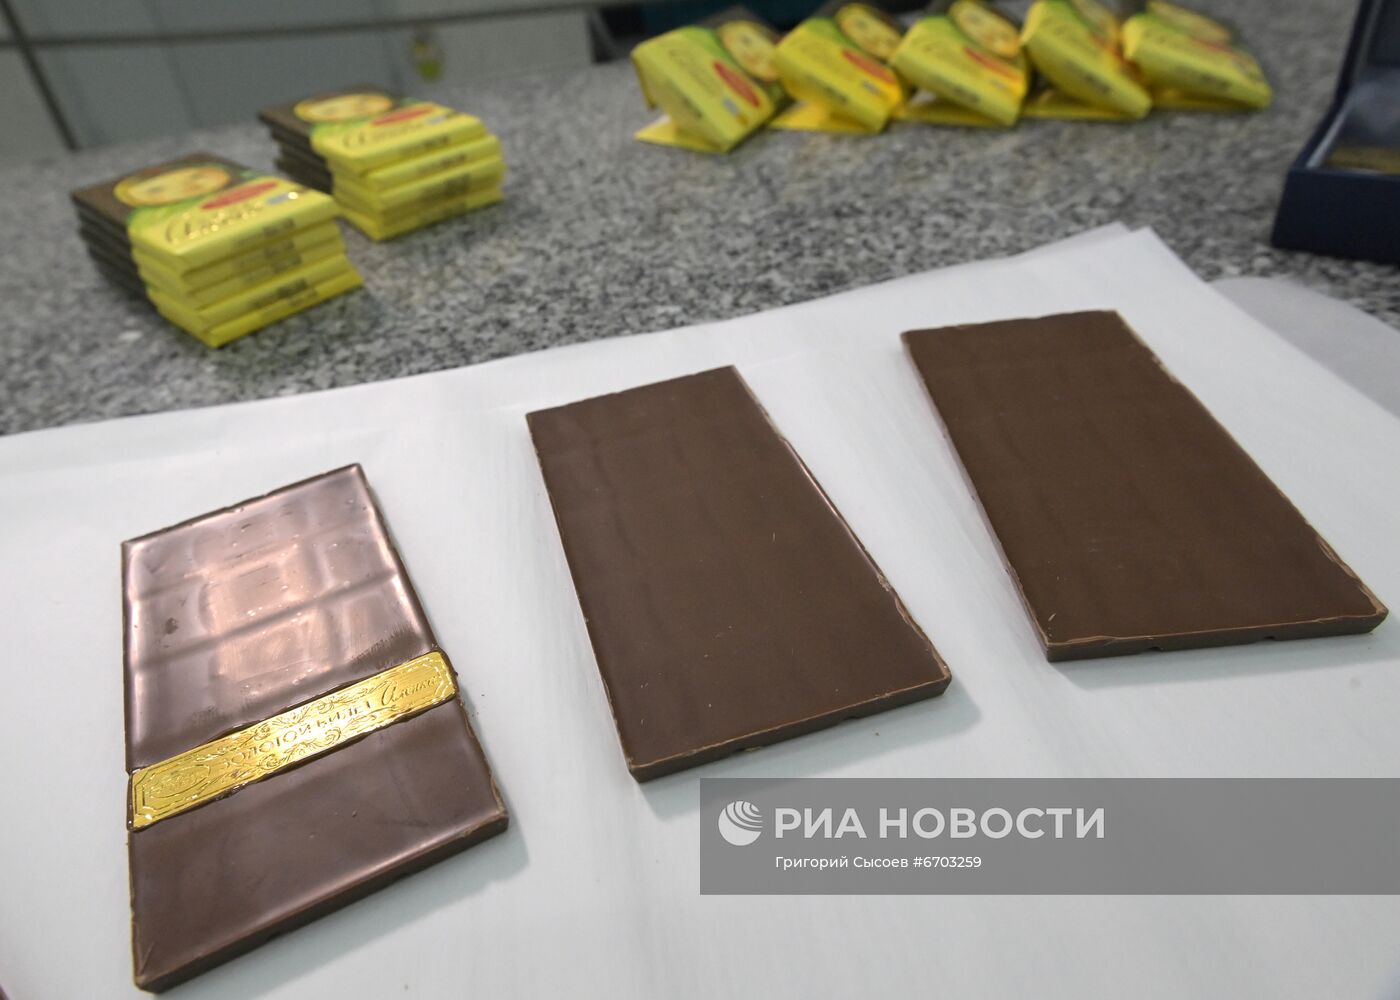 Кондитеры вложили золотое билеты в плитки молочного шоколада "Аленка"